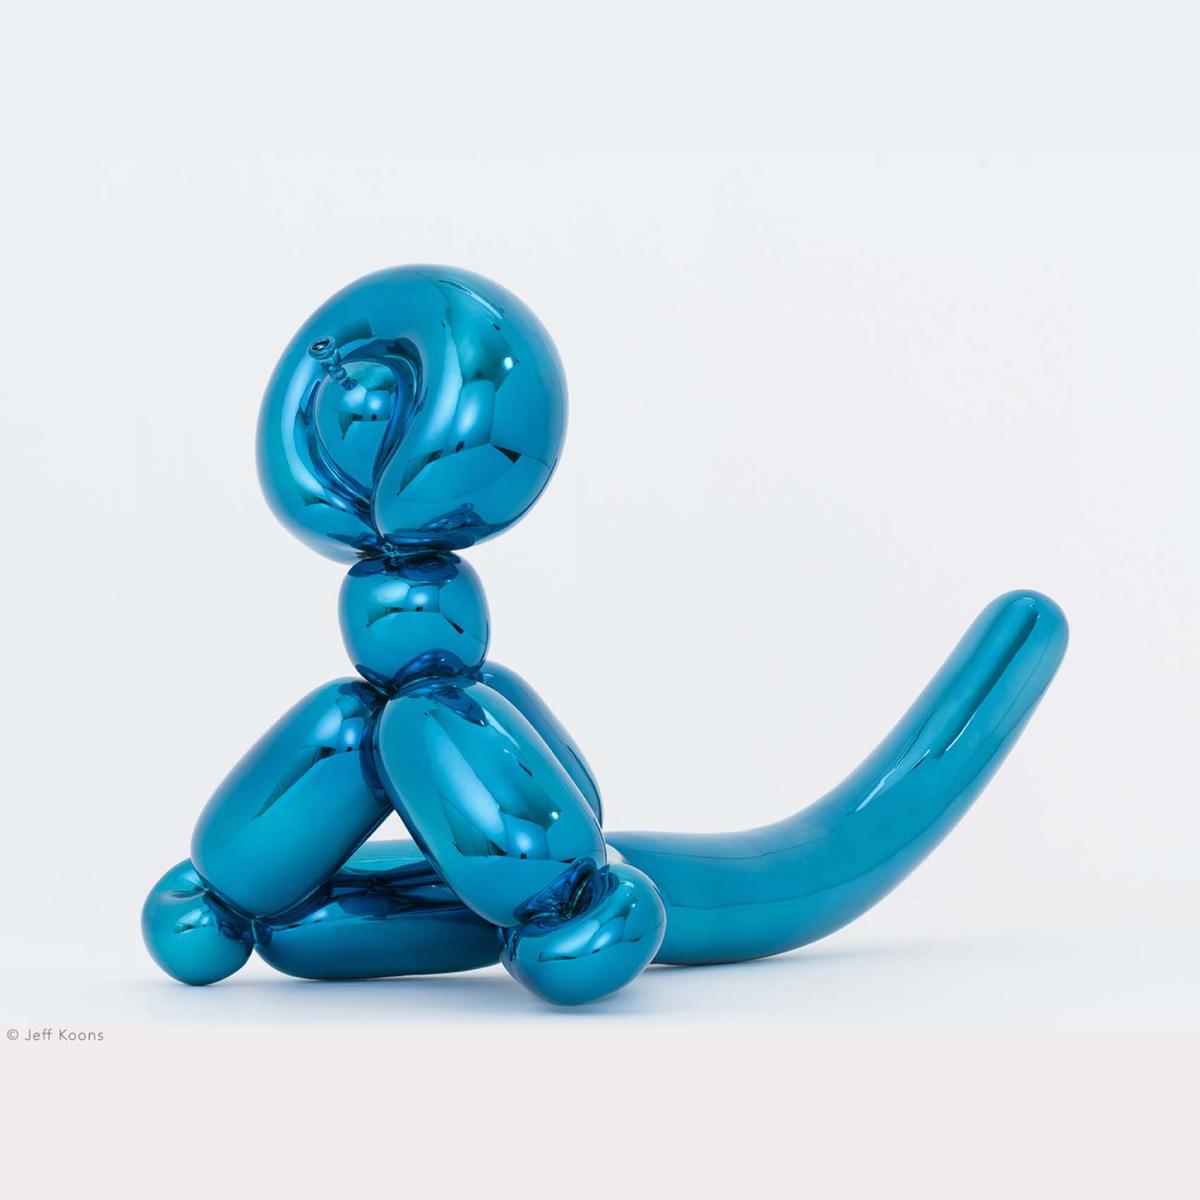 Bernardaud Blue Balloon Monkey Jeff Koons 